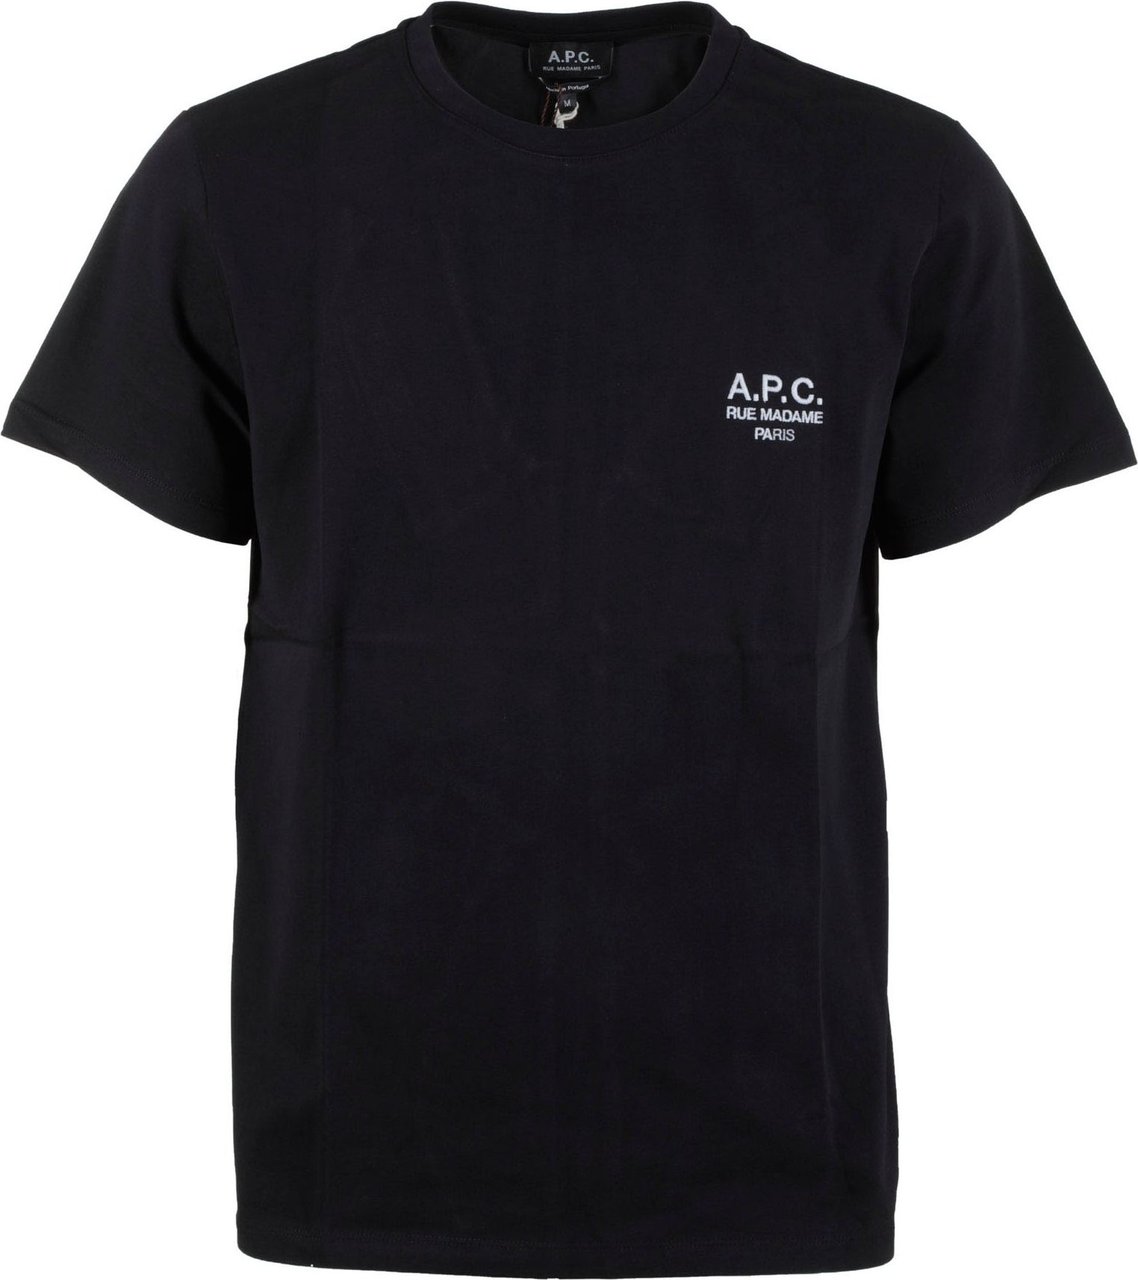 A.P.C. T-shirt Raymond Black Zwart